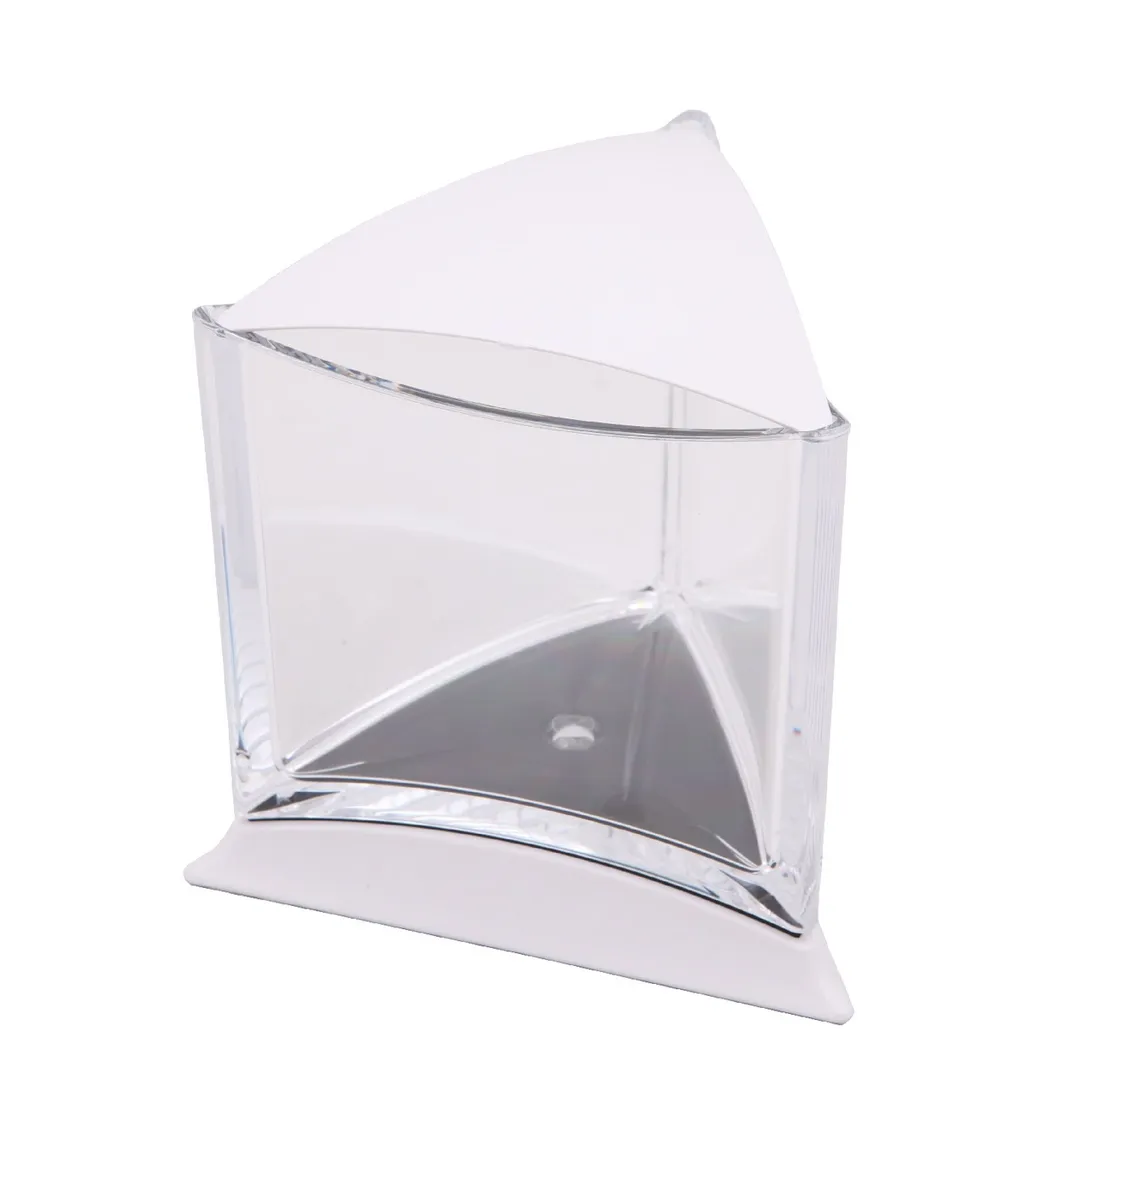 Прочее Аквариум треугольный для рыбки петушка со светодиодной лампой, белый